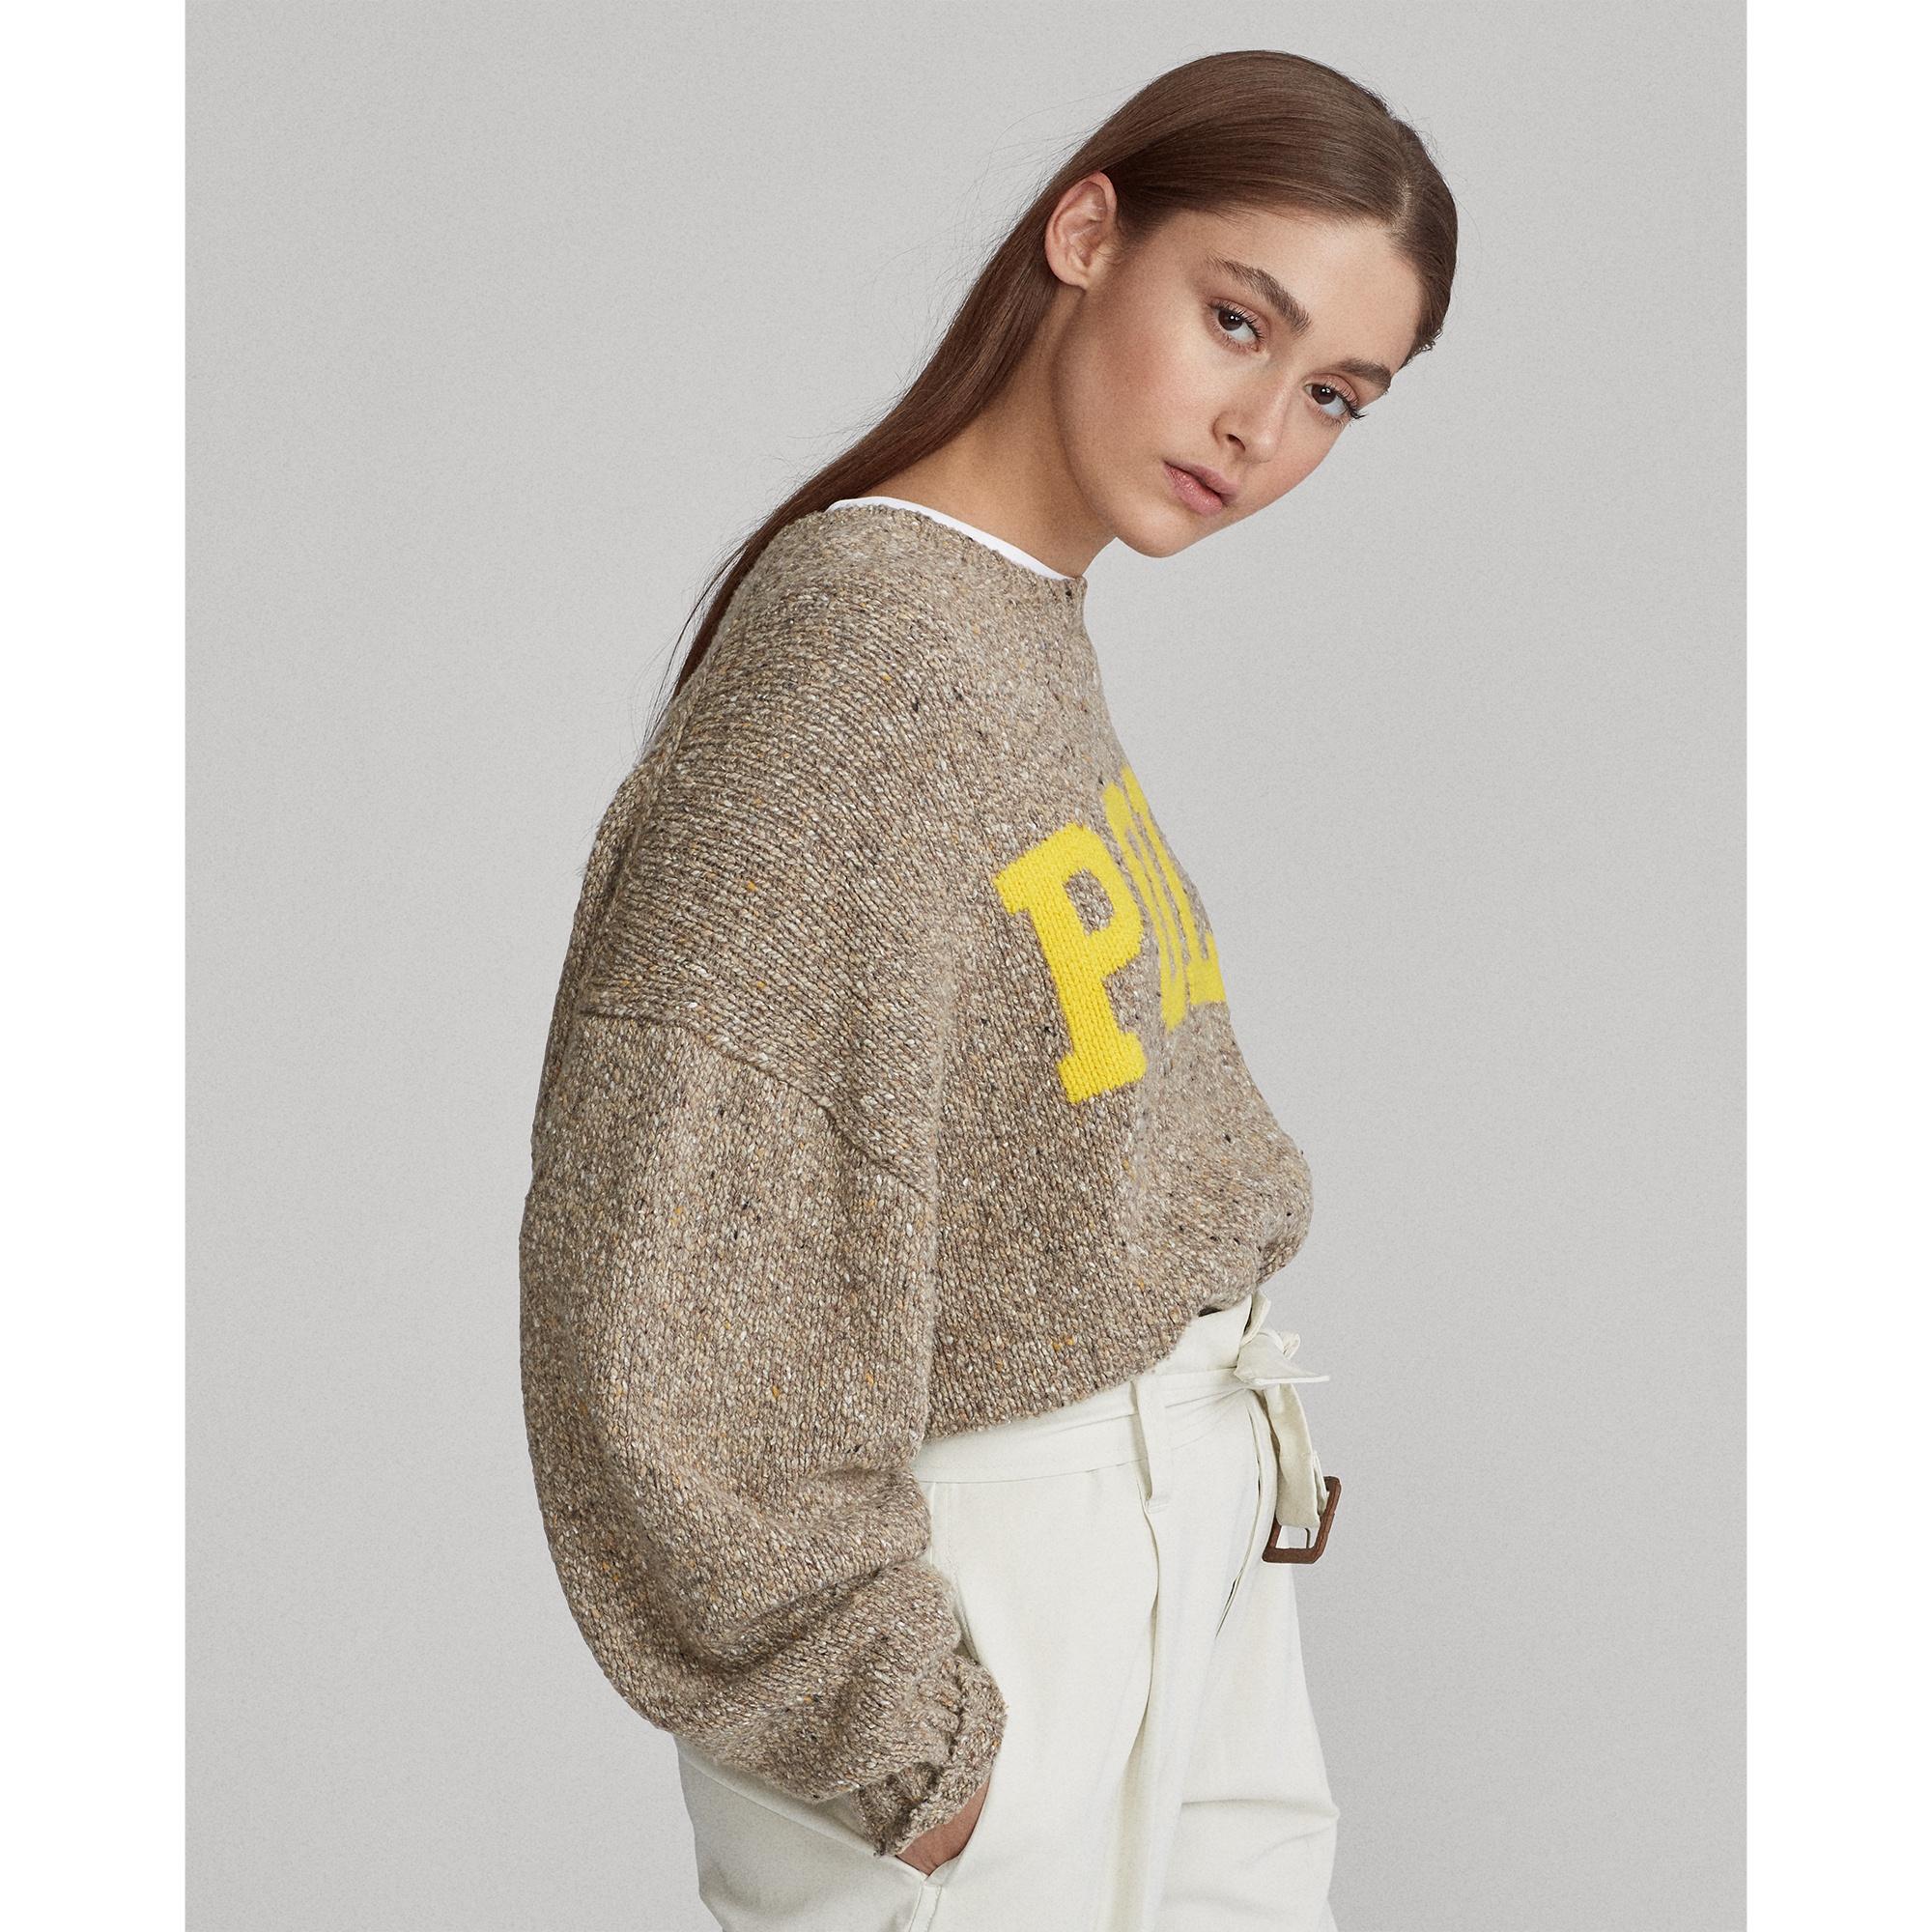 Polo Ralph Lauren Wool Ralph Lauren Logo Sweater | Lyst